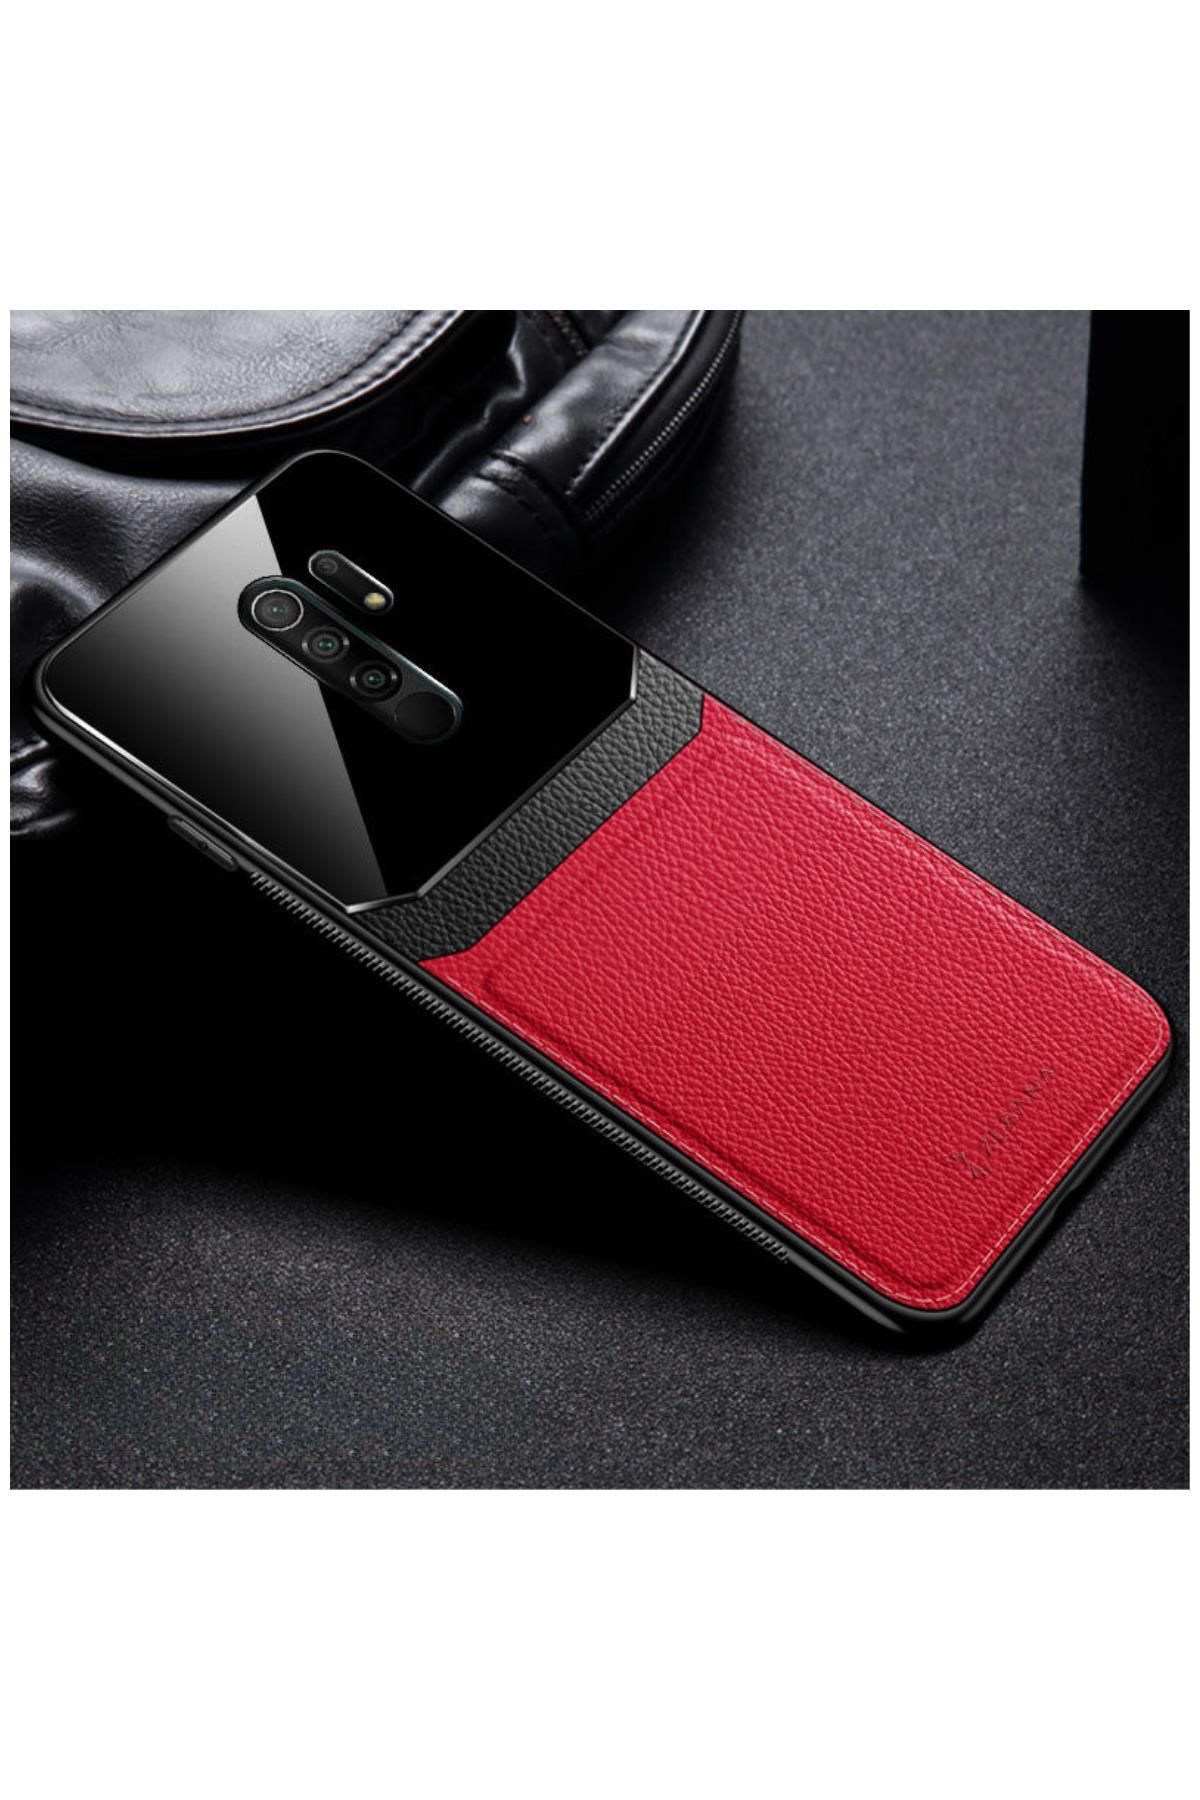 Zebana Xiaomi Redmi 9 Uyumlu Kılıf Lens Deri Kılıf Kırmızı